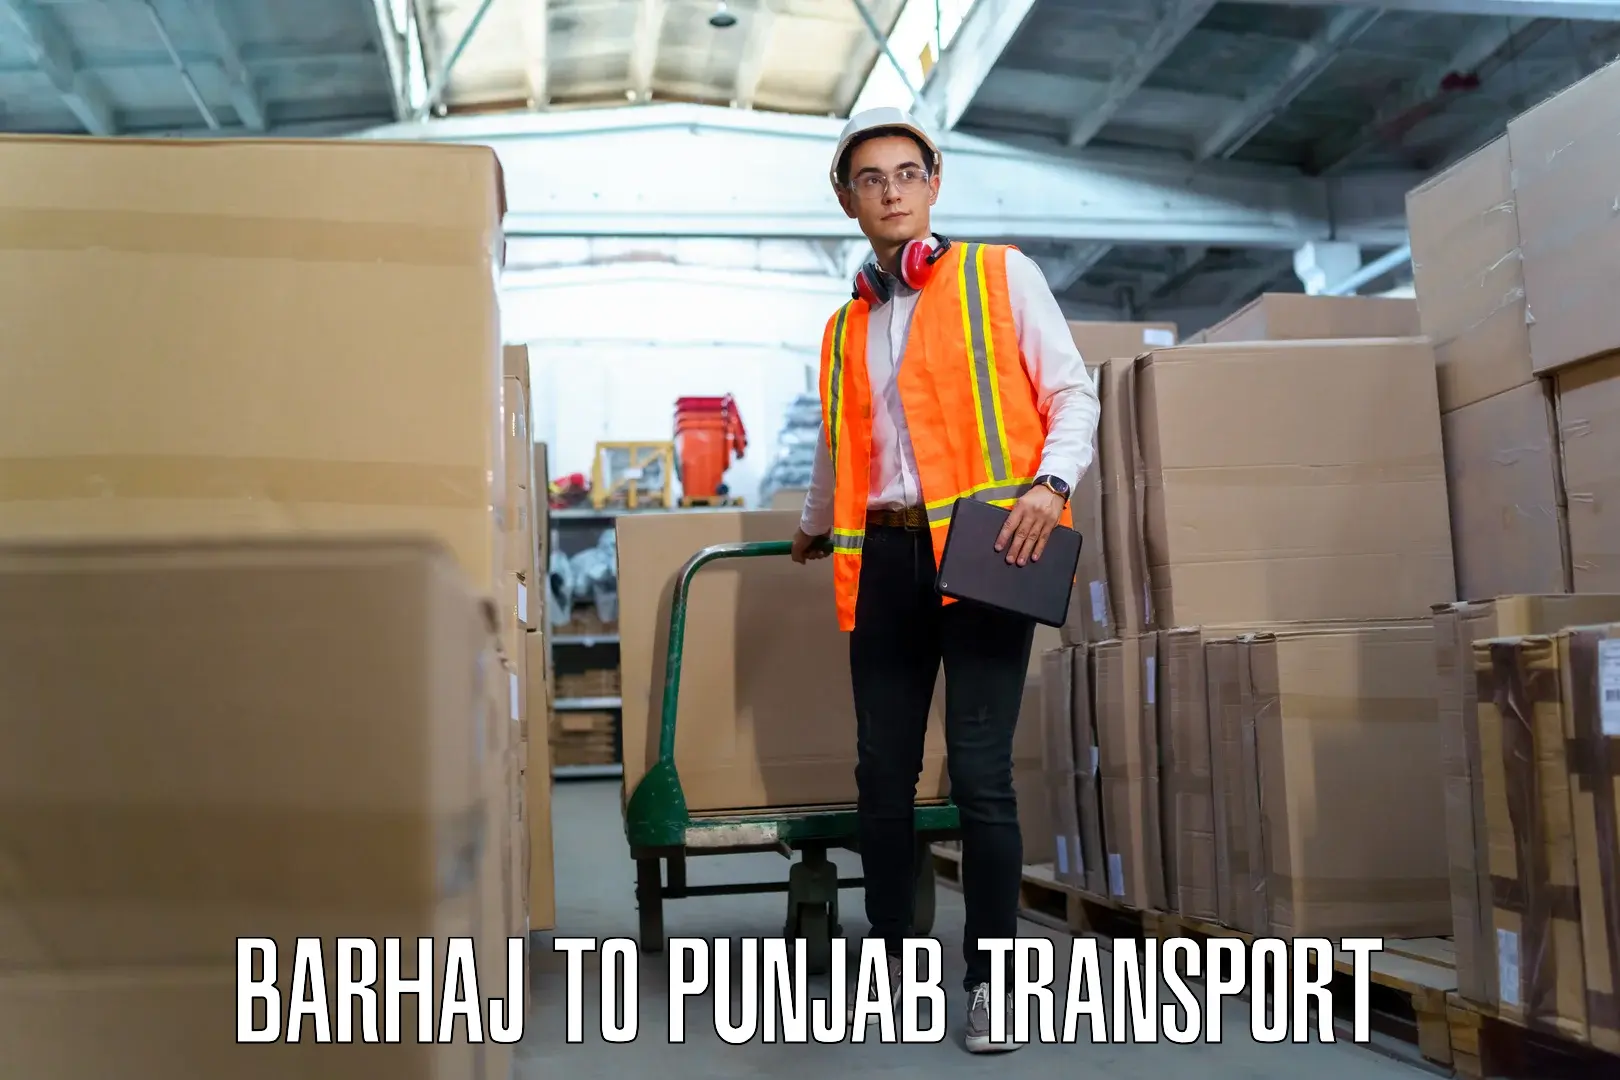 Pick up transport service Barhaj to Punjab